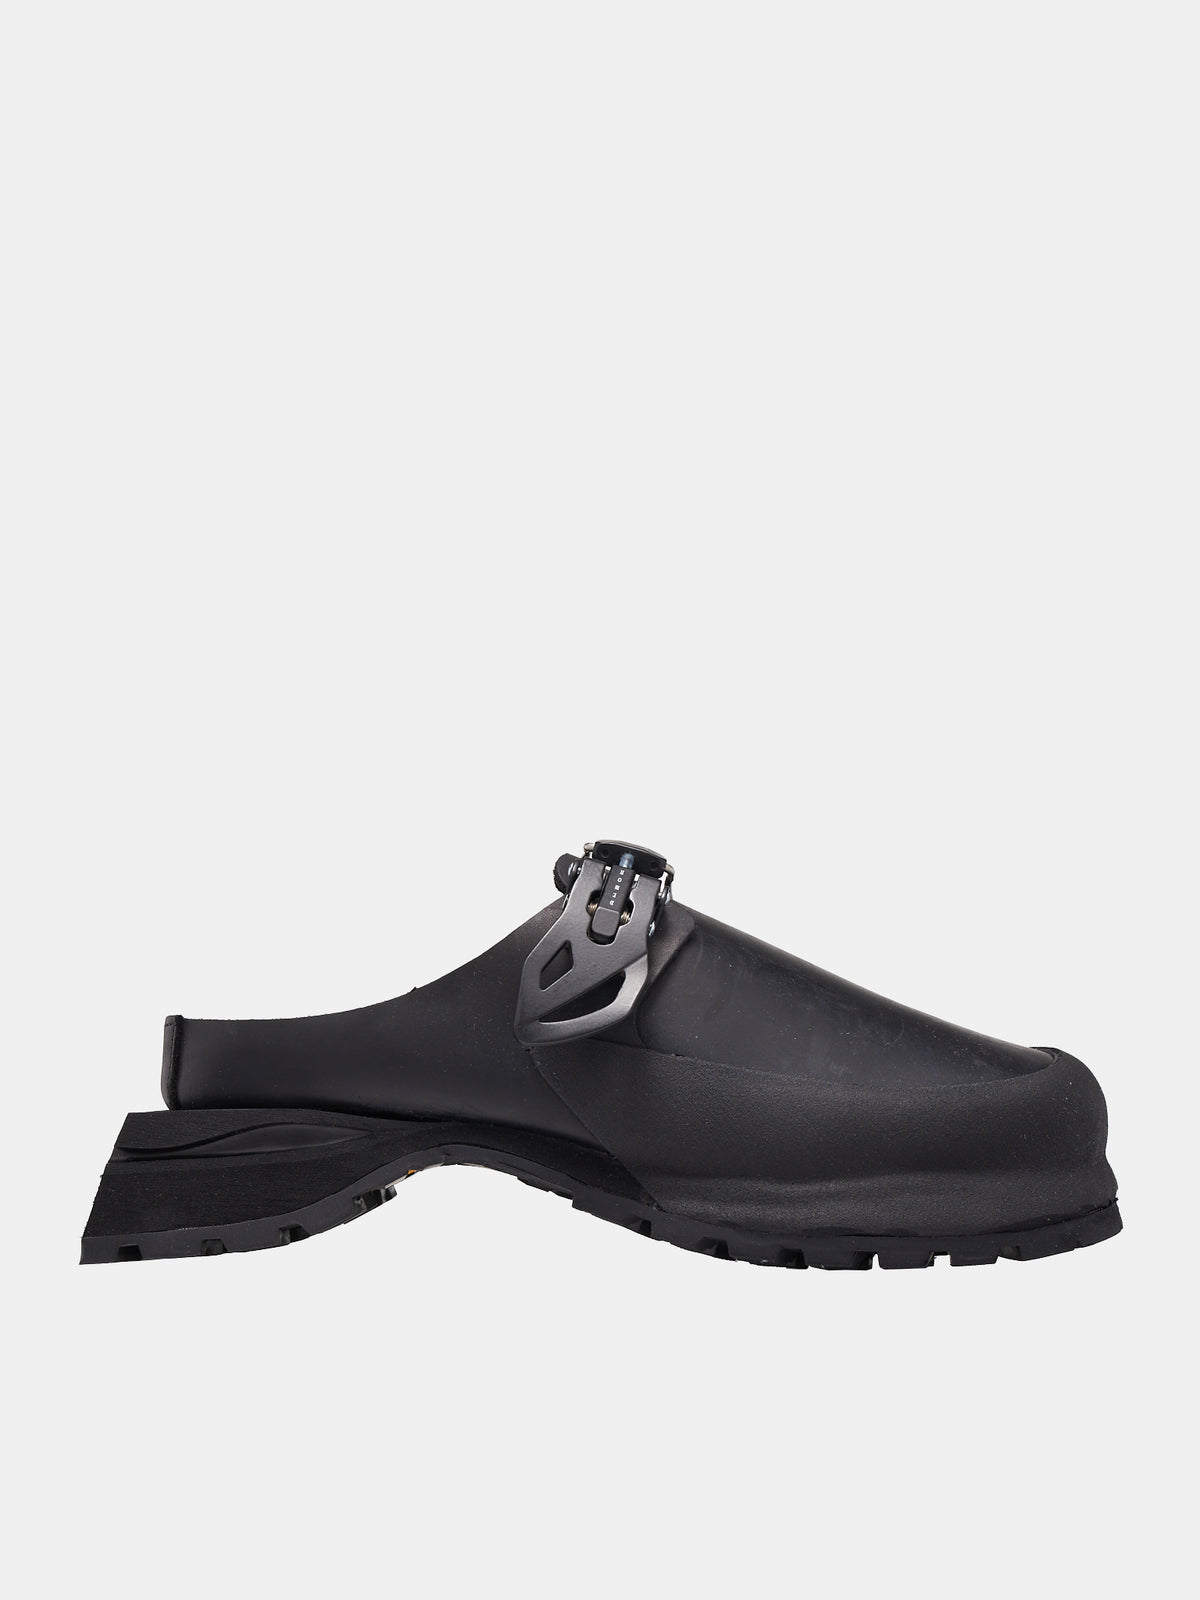 Zhocol Shoes (ZHOCOL-BLACK)